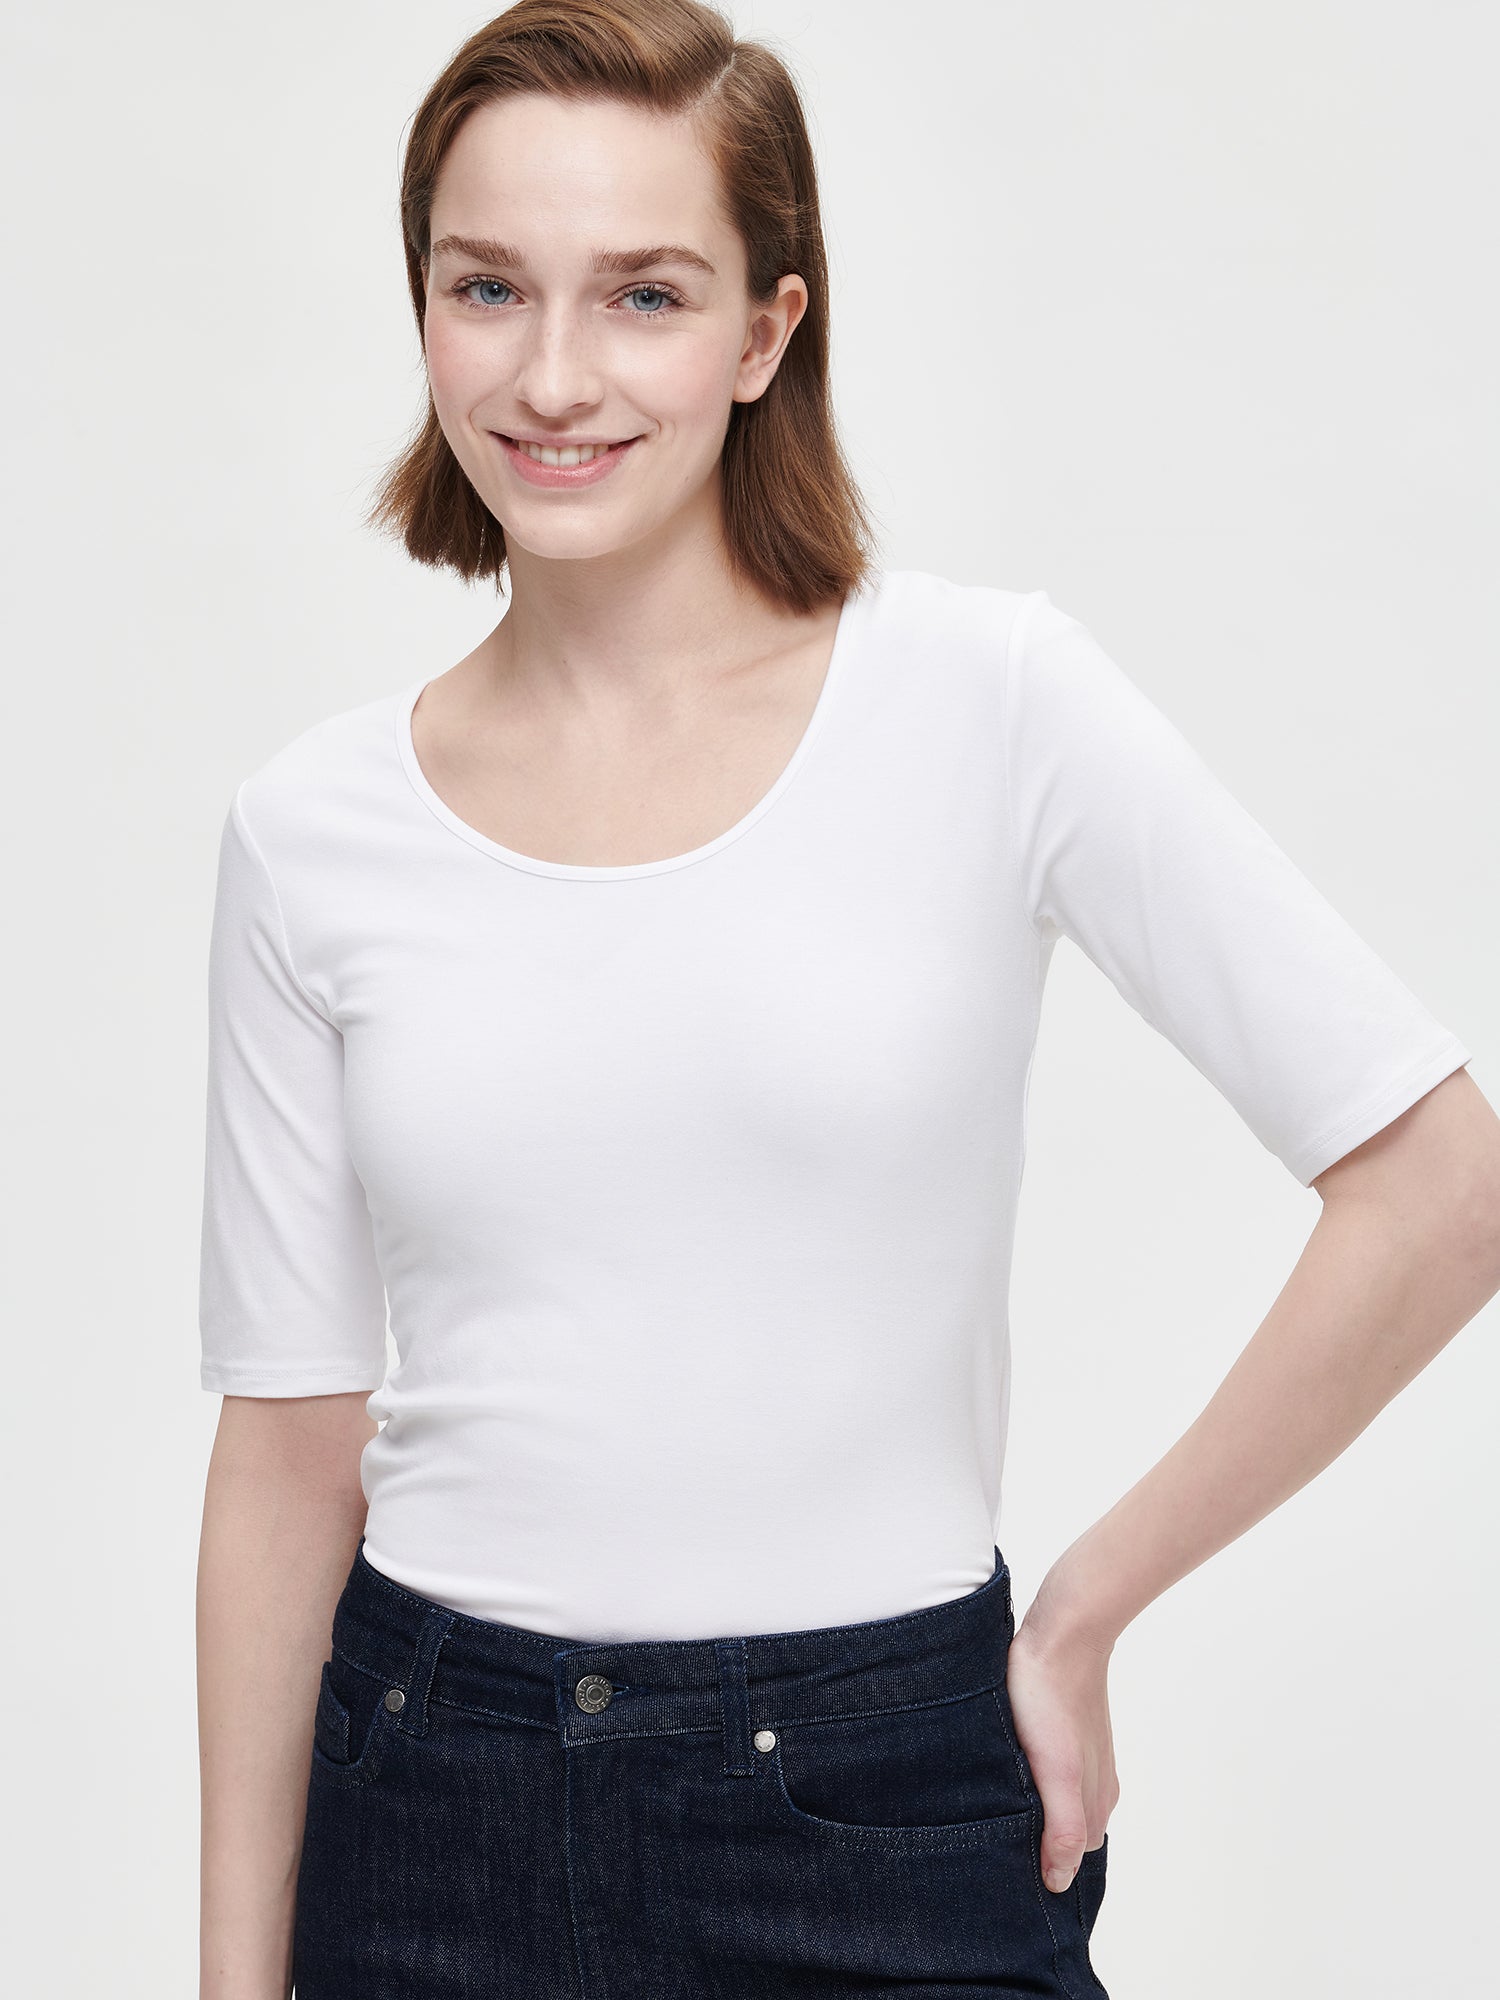 Nanson naisten valkoinen BASIC t-paita pyöreällä pääntiellä koossa S mallin päällä.